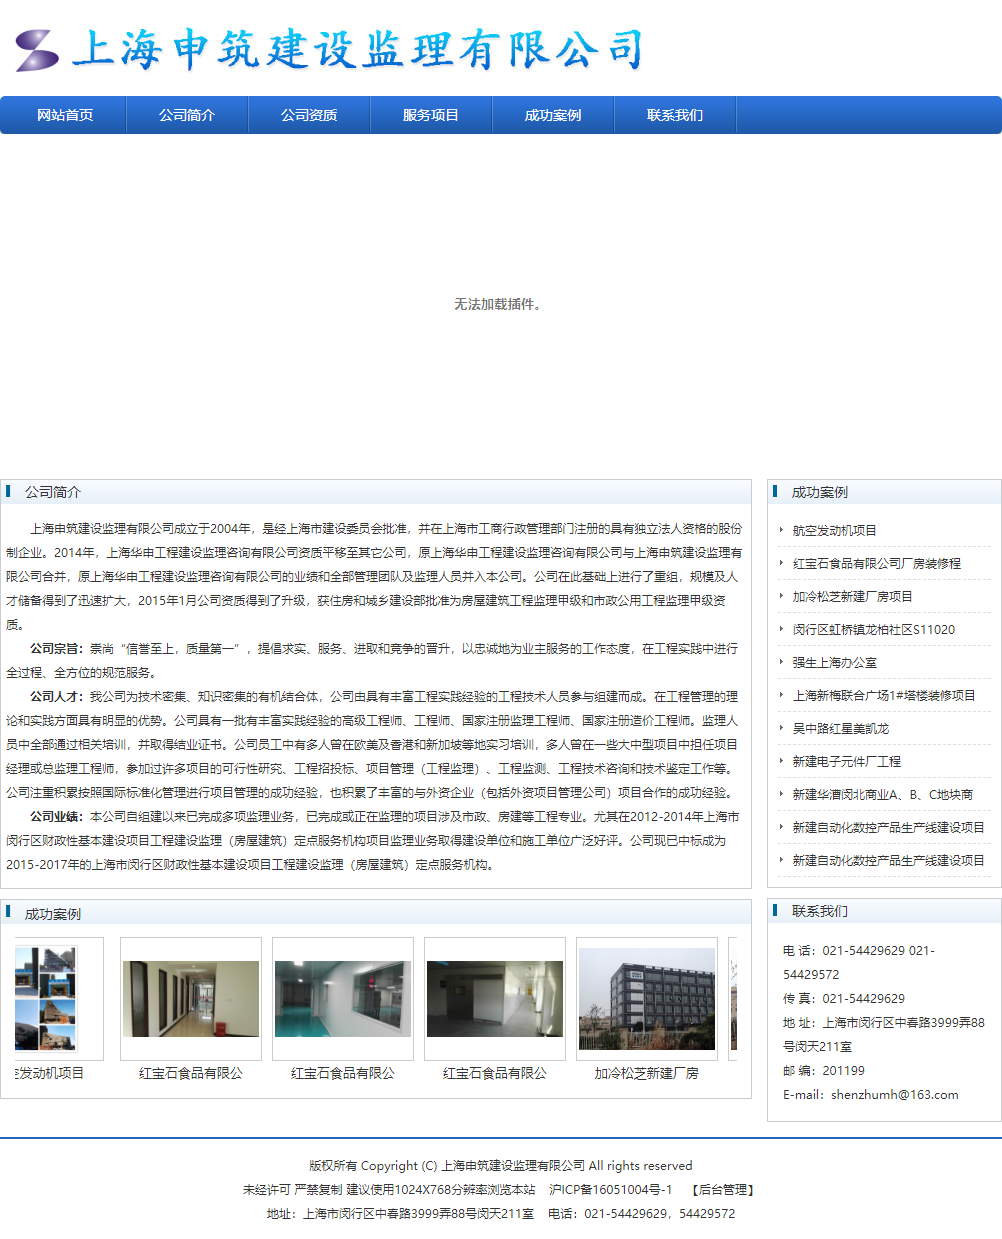 上海申筑建设监理有限公司网站案例